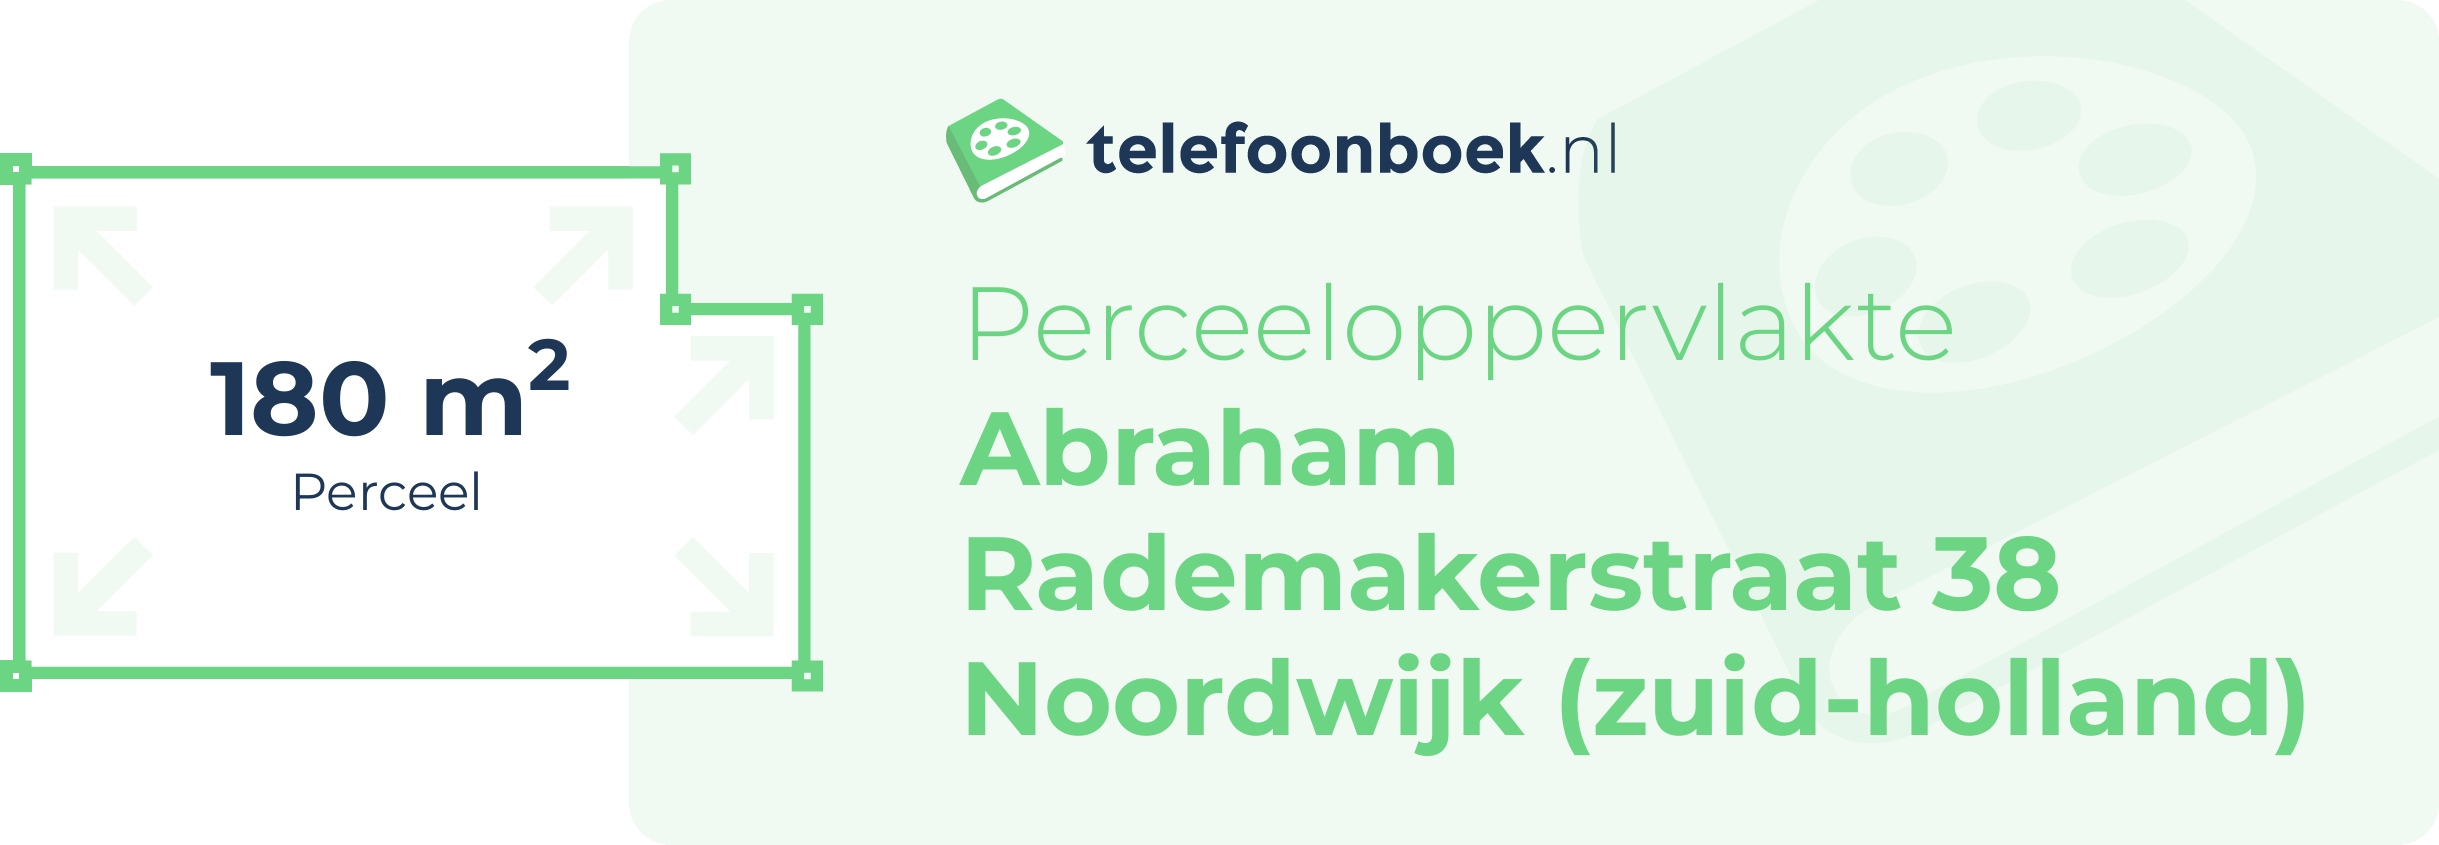 Perceeloppervlakte Abraham Rademakerstraat 38 Noordwijk (Zuid-Holland)